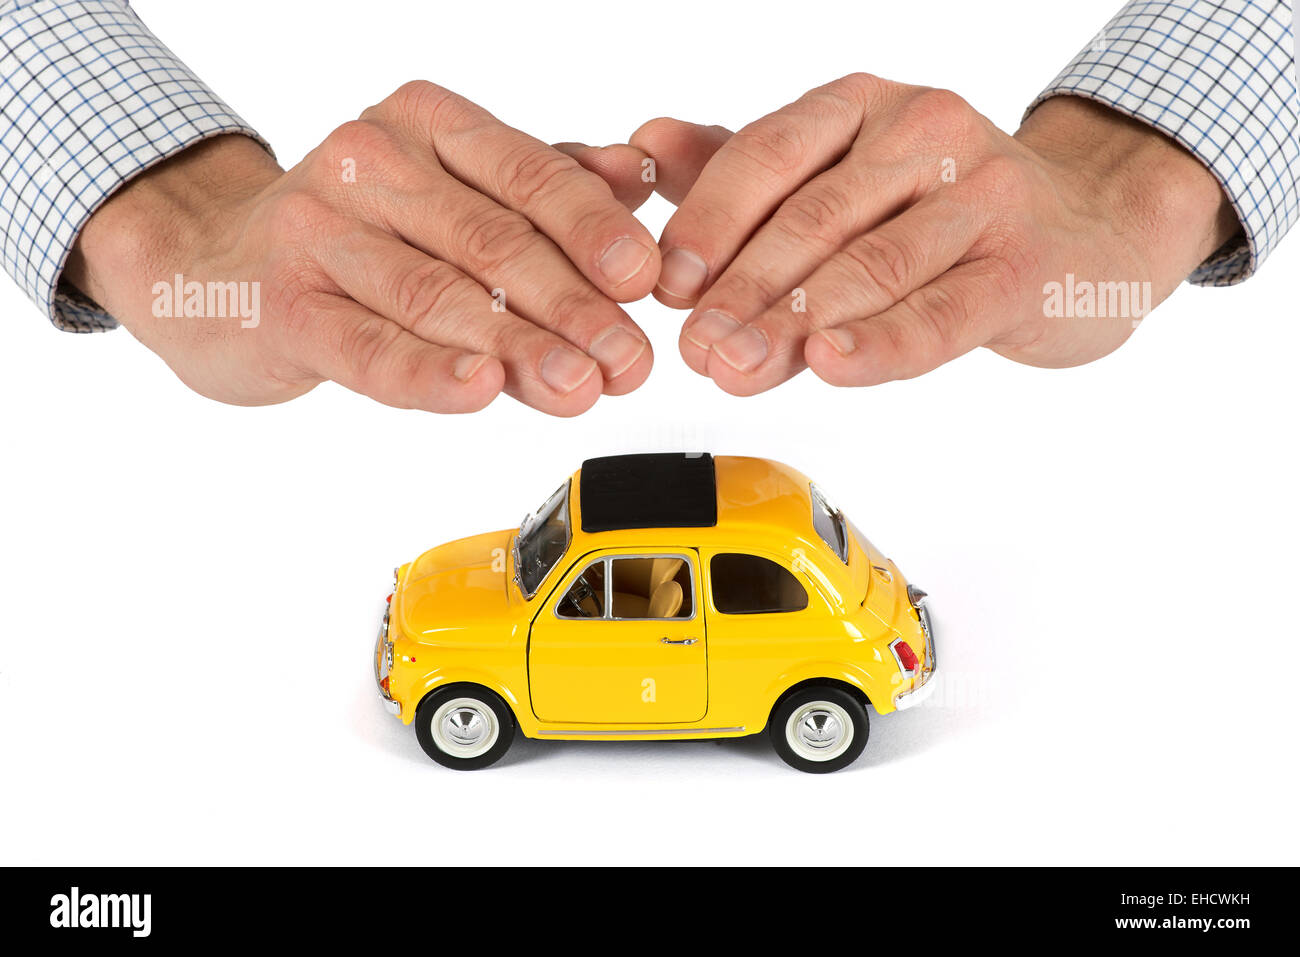 Erwachsene männliche Hände mit Schutzabdeckung Überoberseite des gelben Spielzeugauto, Versicherungskonzept Bild Stockfoto